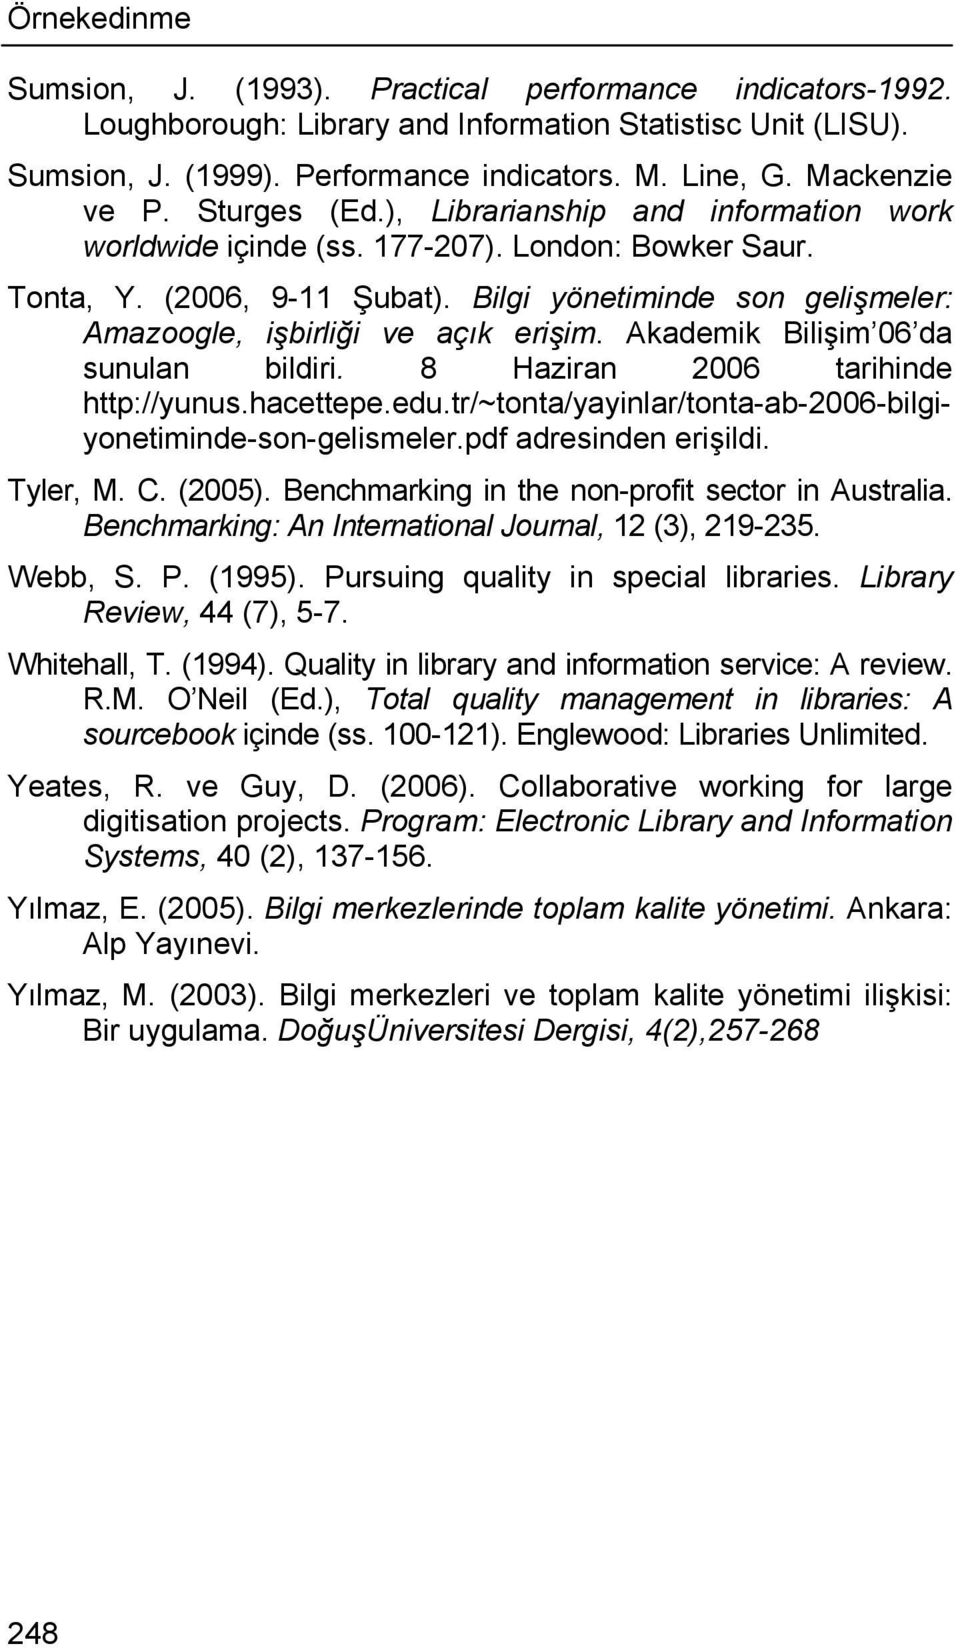 Bilgi yönetiminde son gelişmeler: Amazoogle, işbirliği ve açık erişim. Akademik Bilişim 06 da sunulan bildiri. 8 Haziran 2006 tarihinde http://yunus.hacettepe.edu.